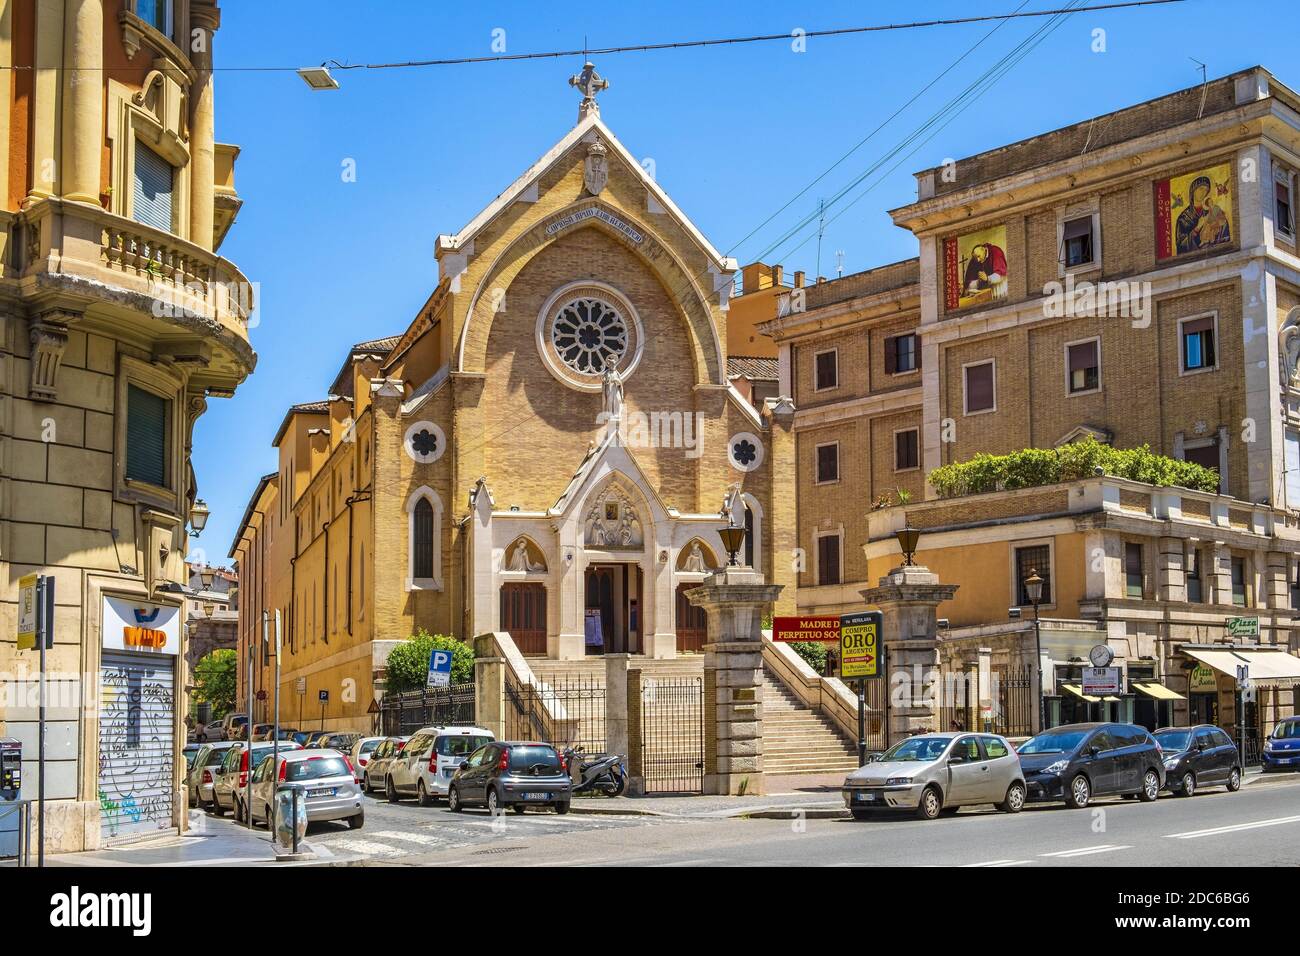 Roma, Italia - 2019/06/16: Chiesa di Sant'Alfonso Liguori - Chiesa di Sant'Alfonso di Liguori all'Esquilino - in Via Merulana sul colle Esquilino i. Foto Stock